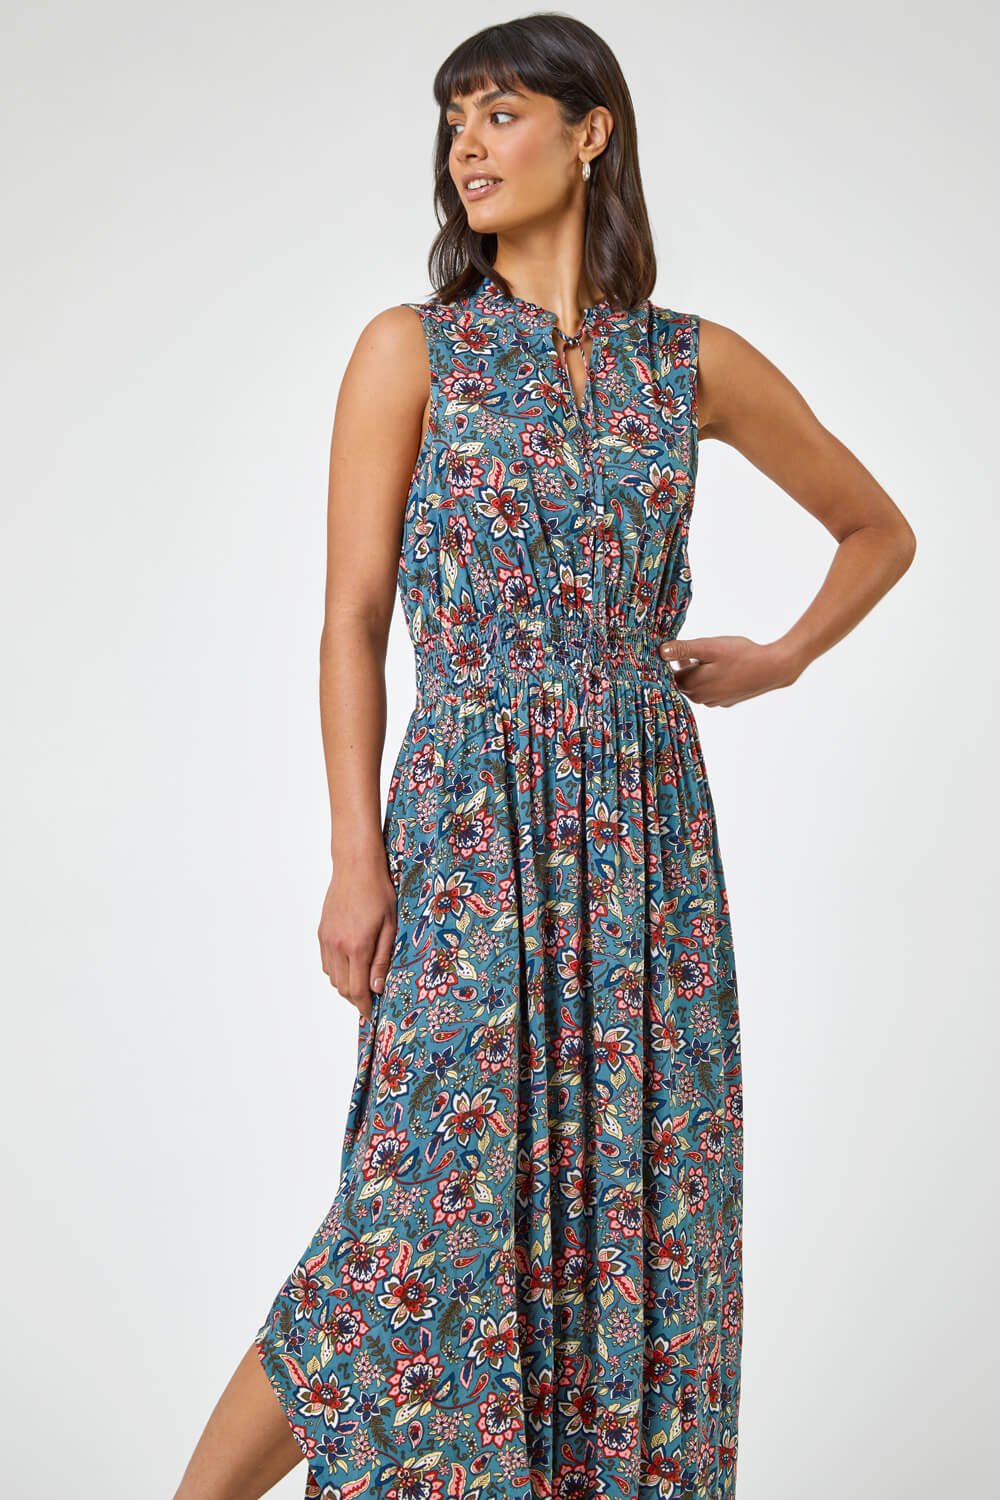 Floral Paisley Hanky Hem Dress in Teal - Roman Originals UK